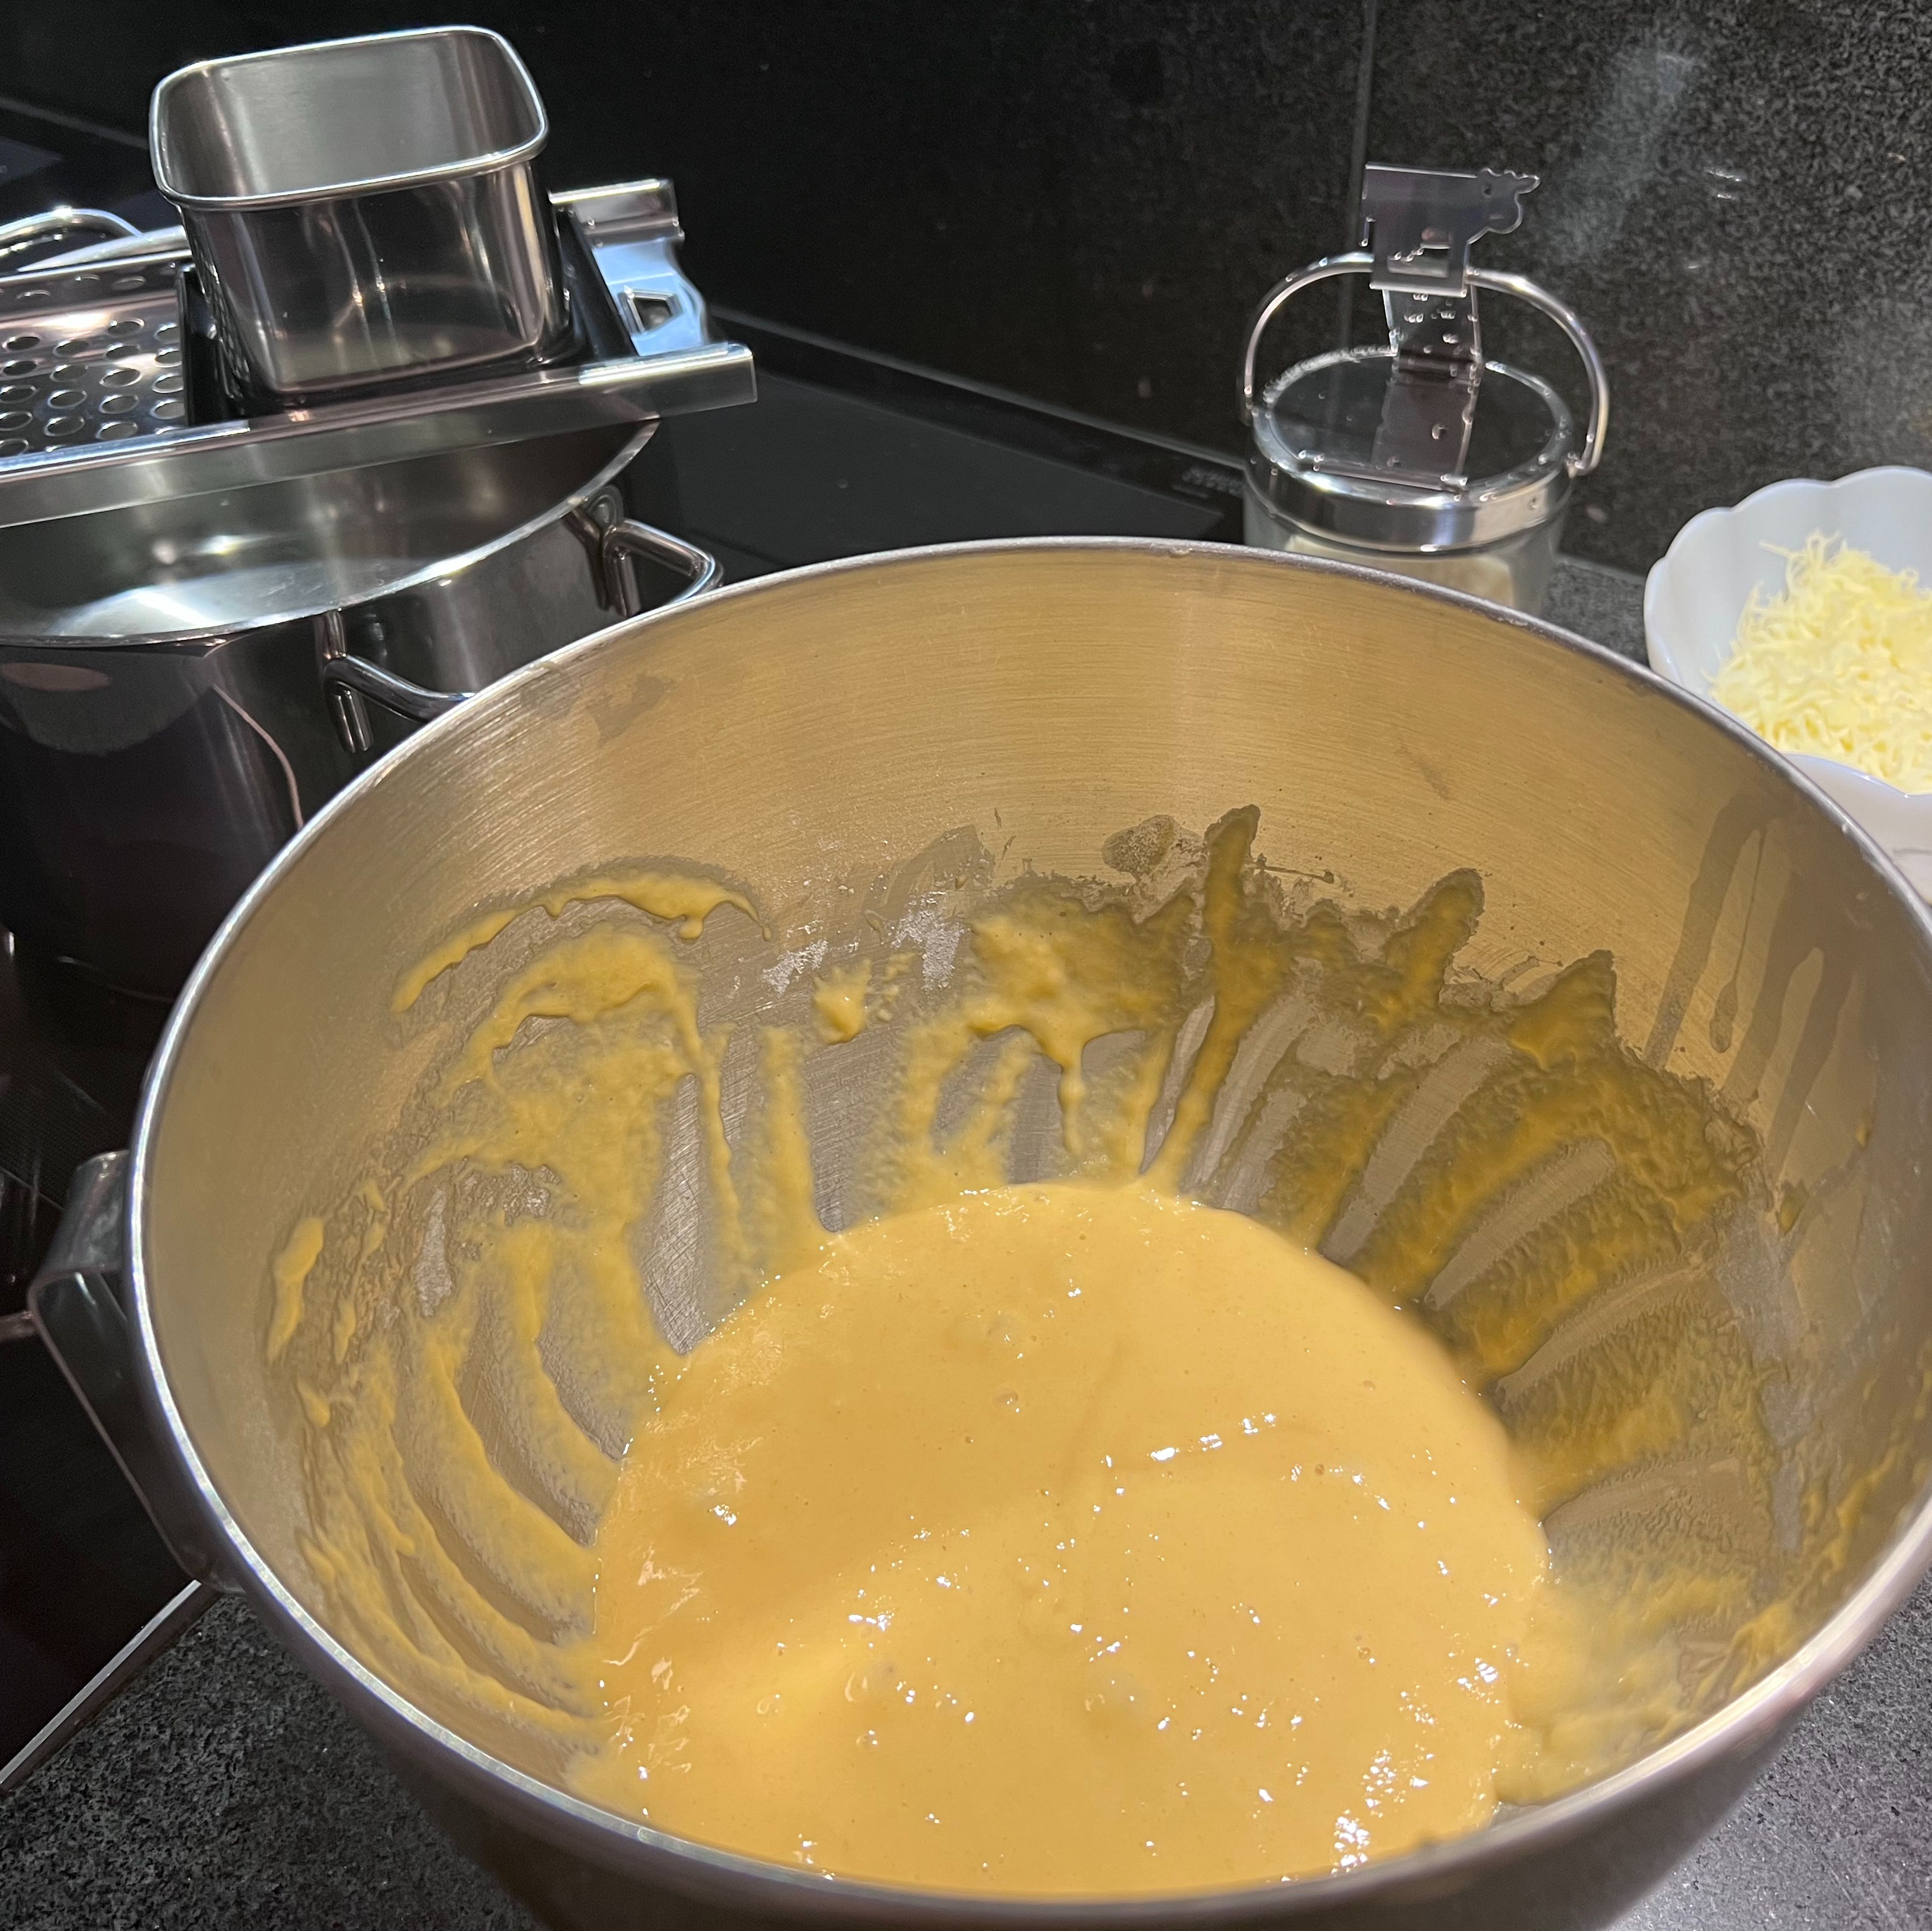 Nun wird der Spätzle Teig vorbereitet. Hierfür die Eier mit dem Mixer verquirlen, dann das Mehl und das Salz hinzugeben und langsam mit dem Mixer unterrühren. Dann den Spätzle Teig mit einem Holzlöffel kräftig schlagen, bis Luftbläschen an die Oberfläche kommen. Den Teig für ca. 30 Minuten ruhen lassen.